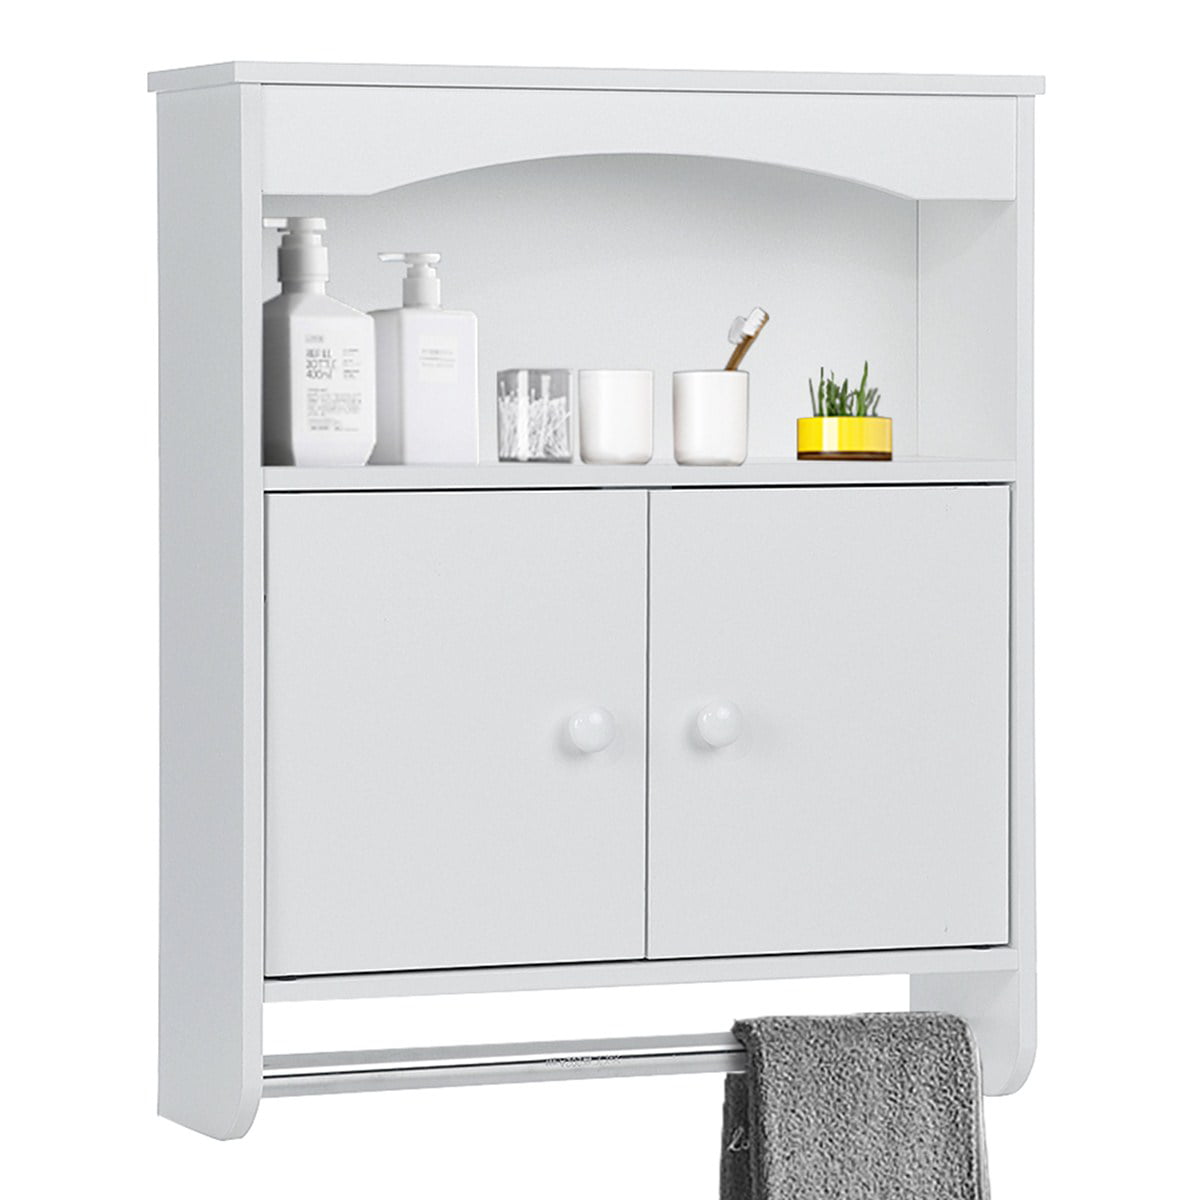 Insma Wooden Bathroom Wall Cabinet with Towel Bar, Bathroom Wall